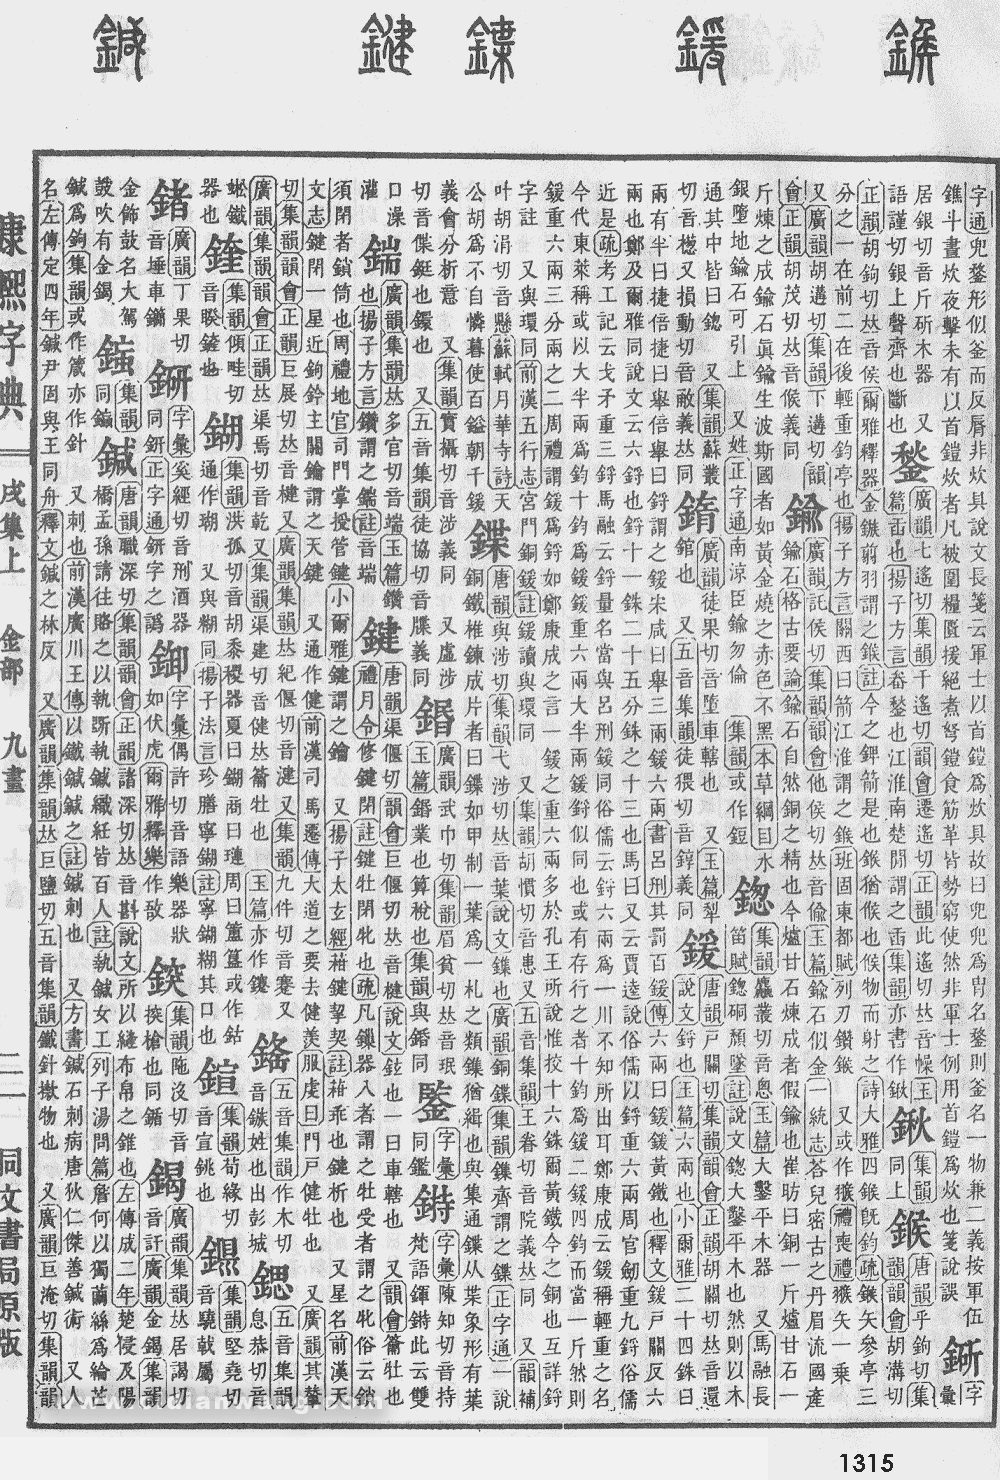 康熙字典掃描版第1315頁